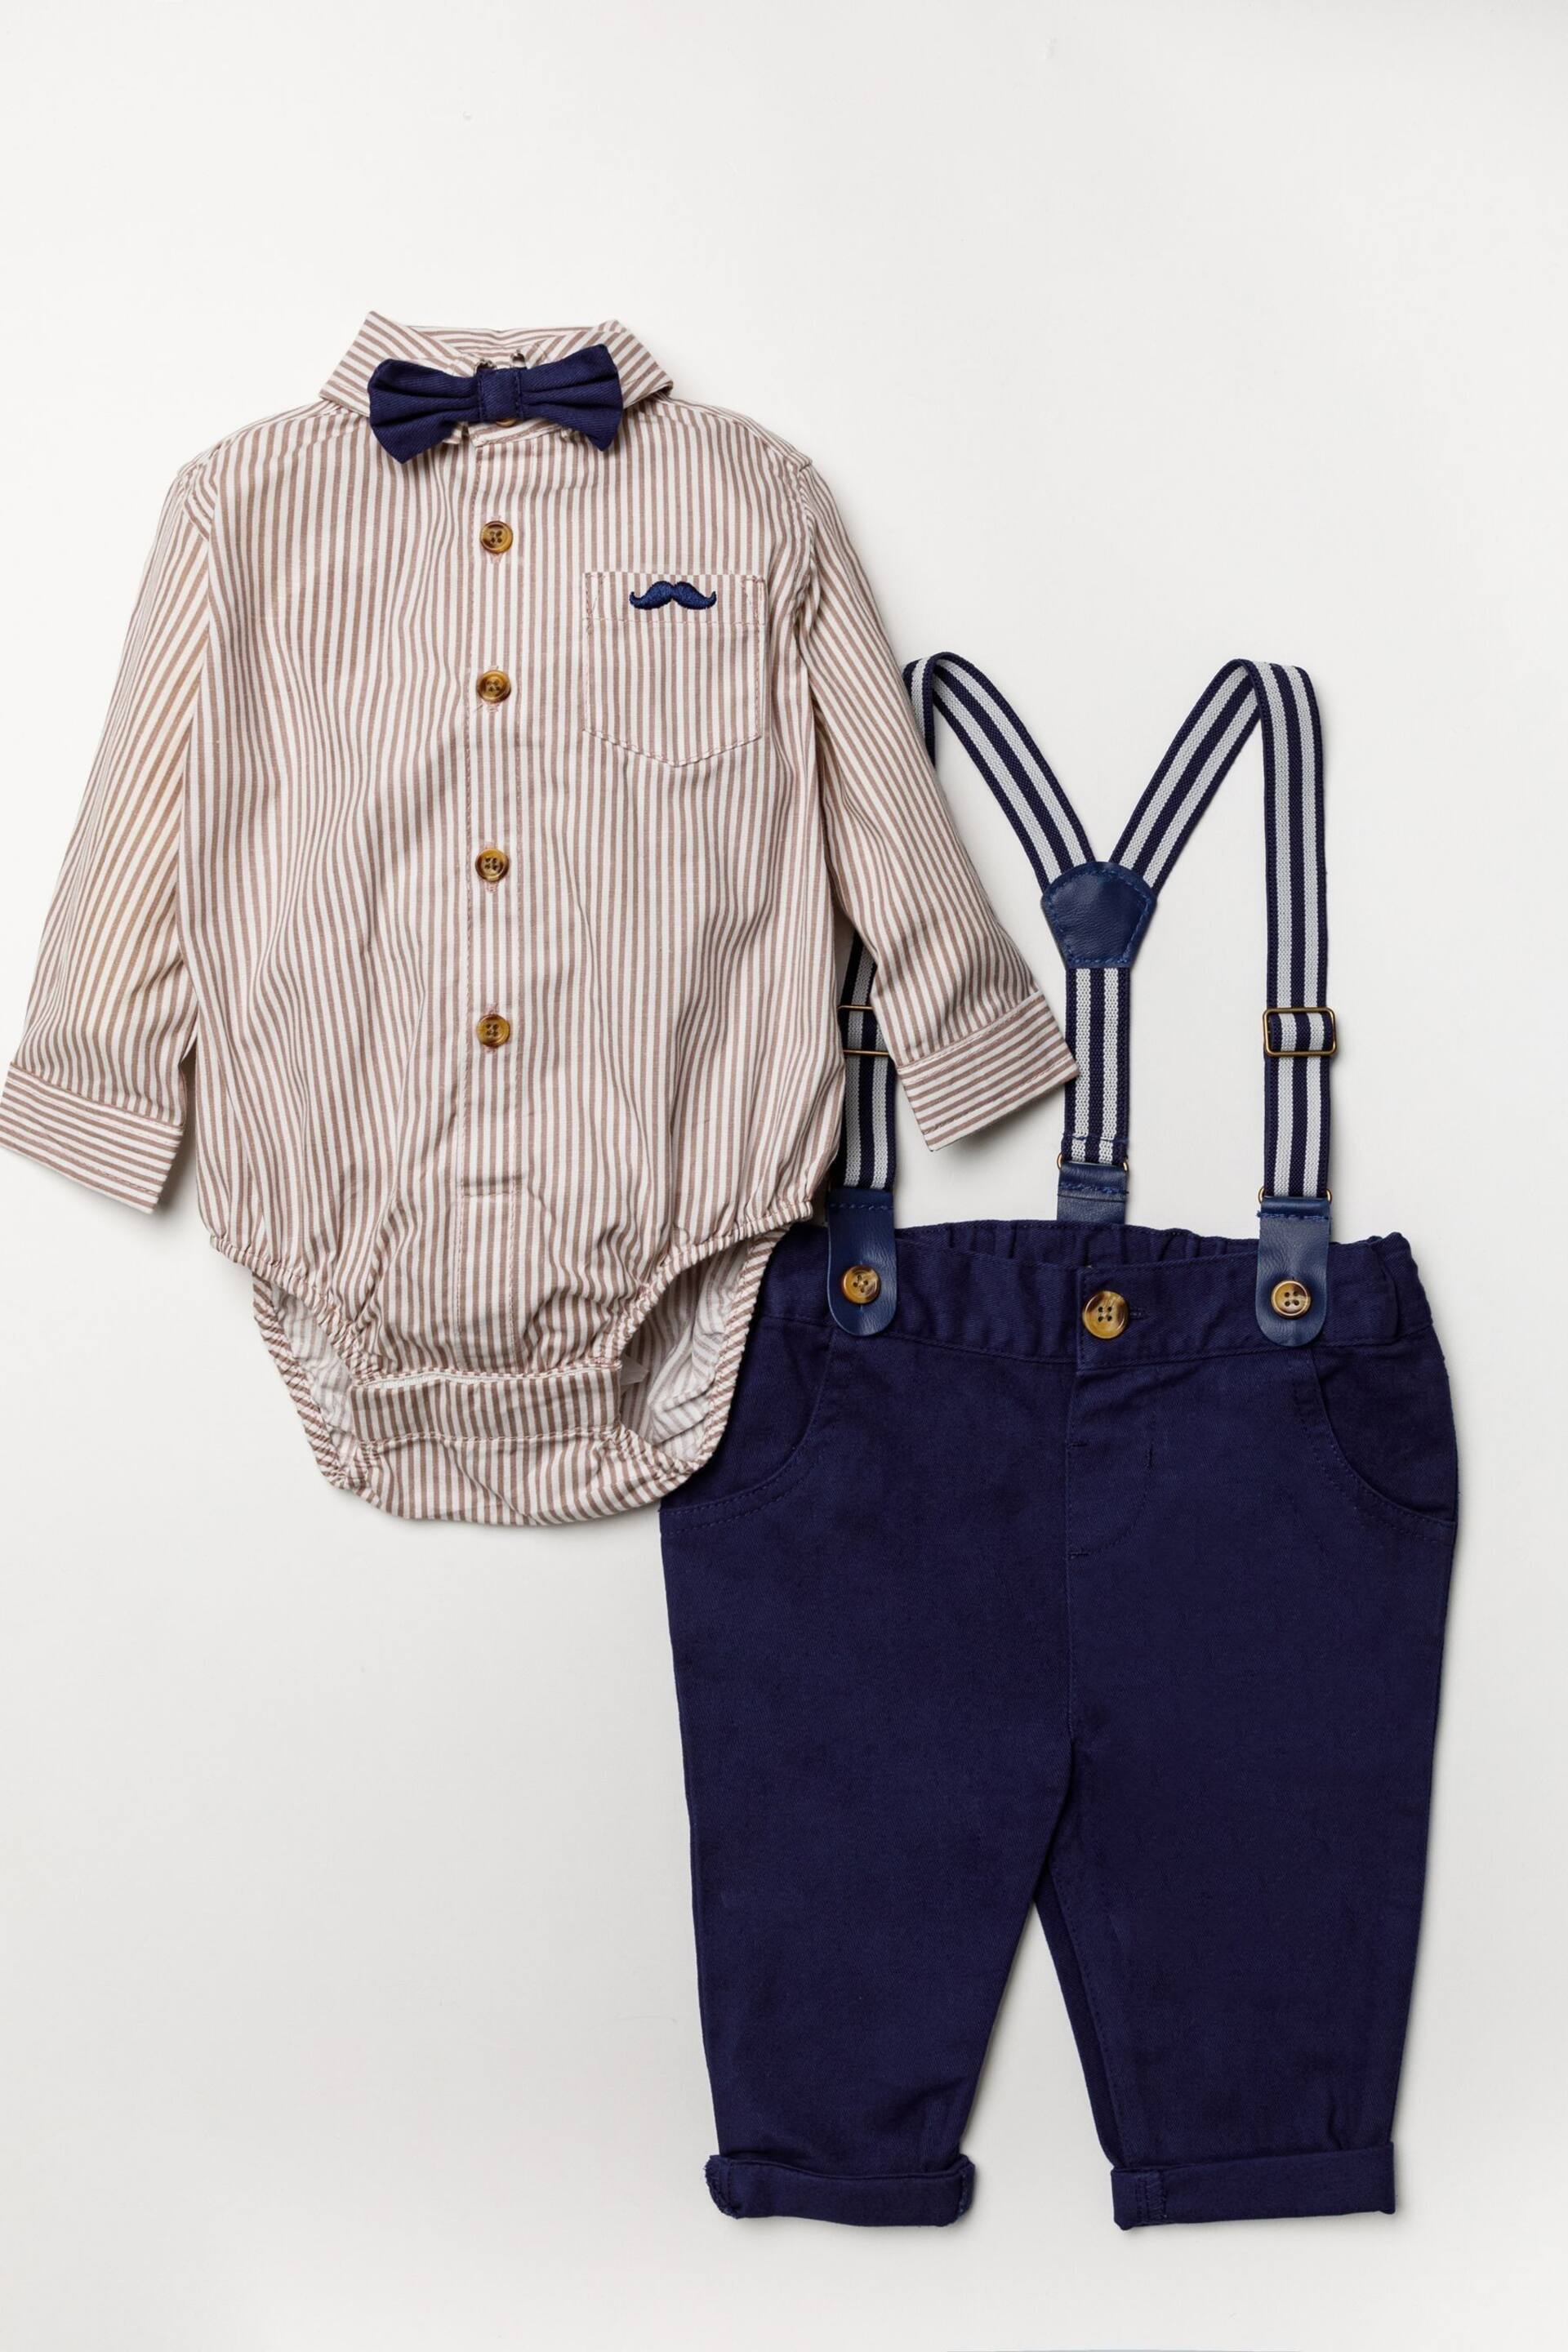 Little Gent Blue Shirt Bodysuit, Bowtie, Trouser And Braces 3 Piece Baby Set - Image 1 of 5